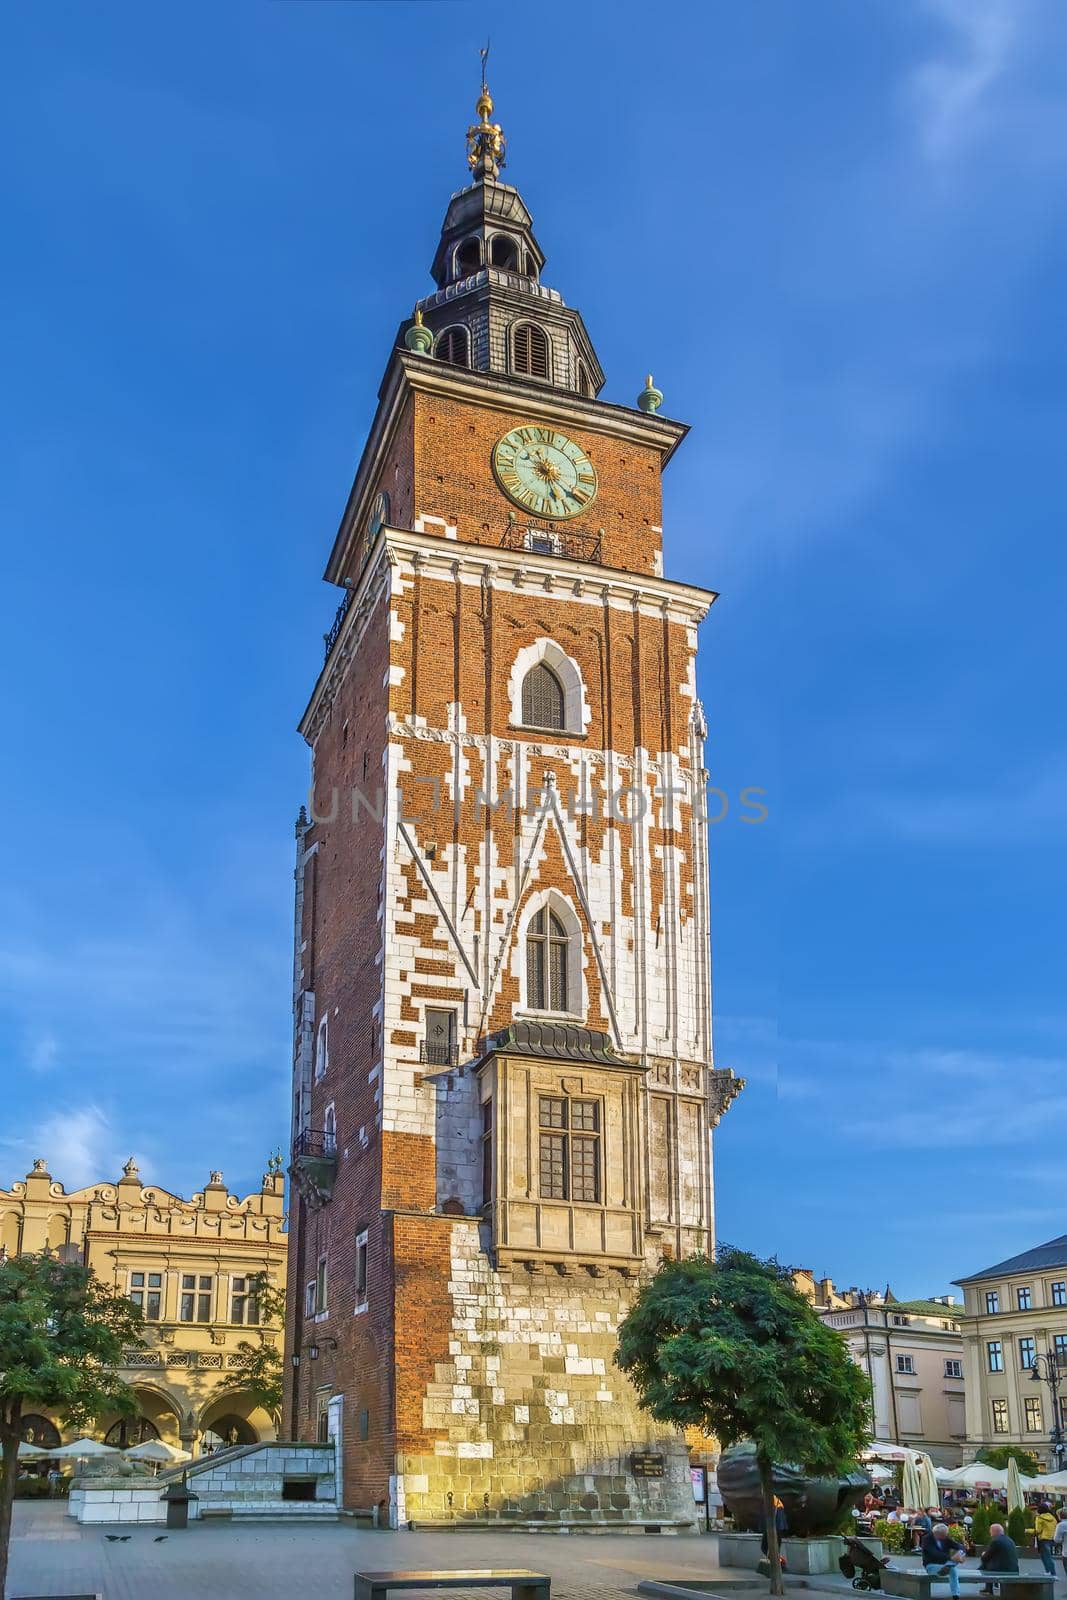 Town Hall Tower, Krakow, Poland by borisb17